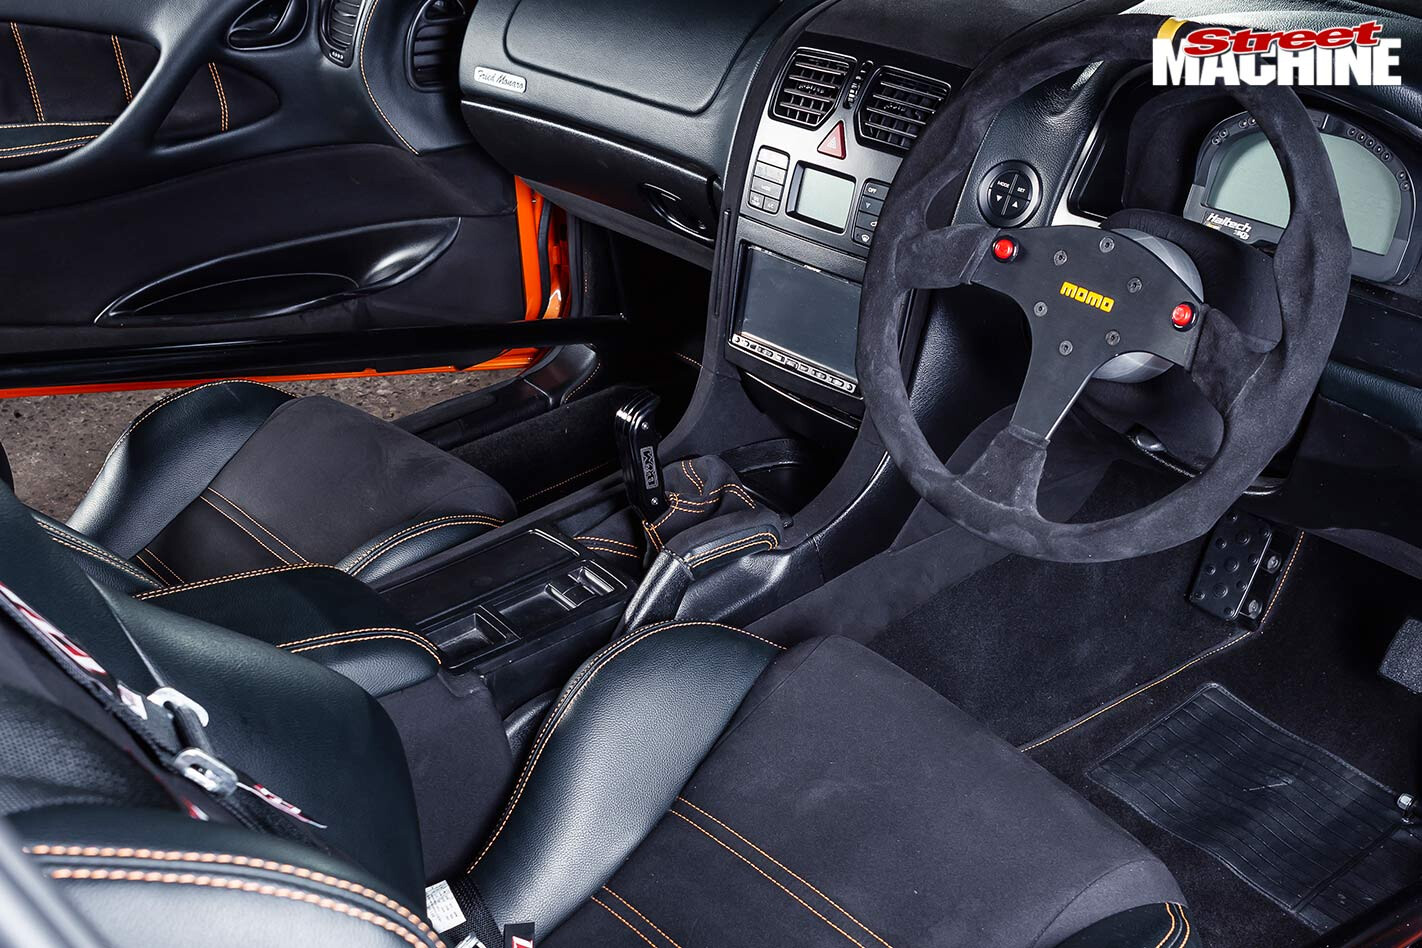 Holden Monaro CV8 interior